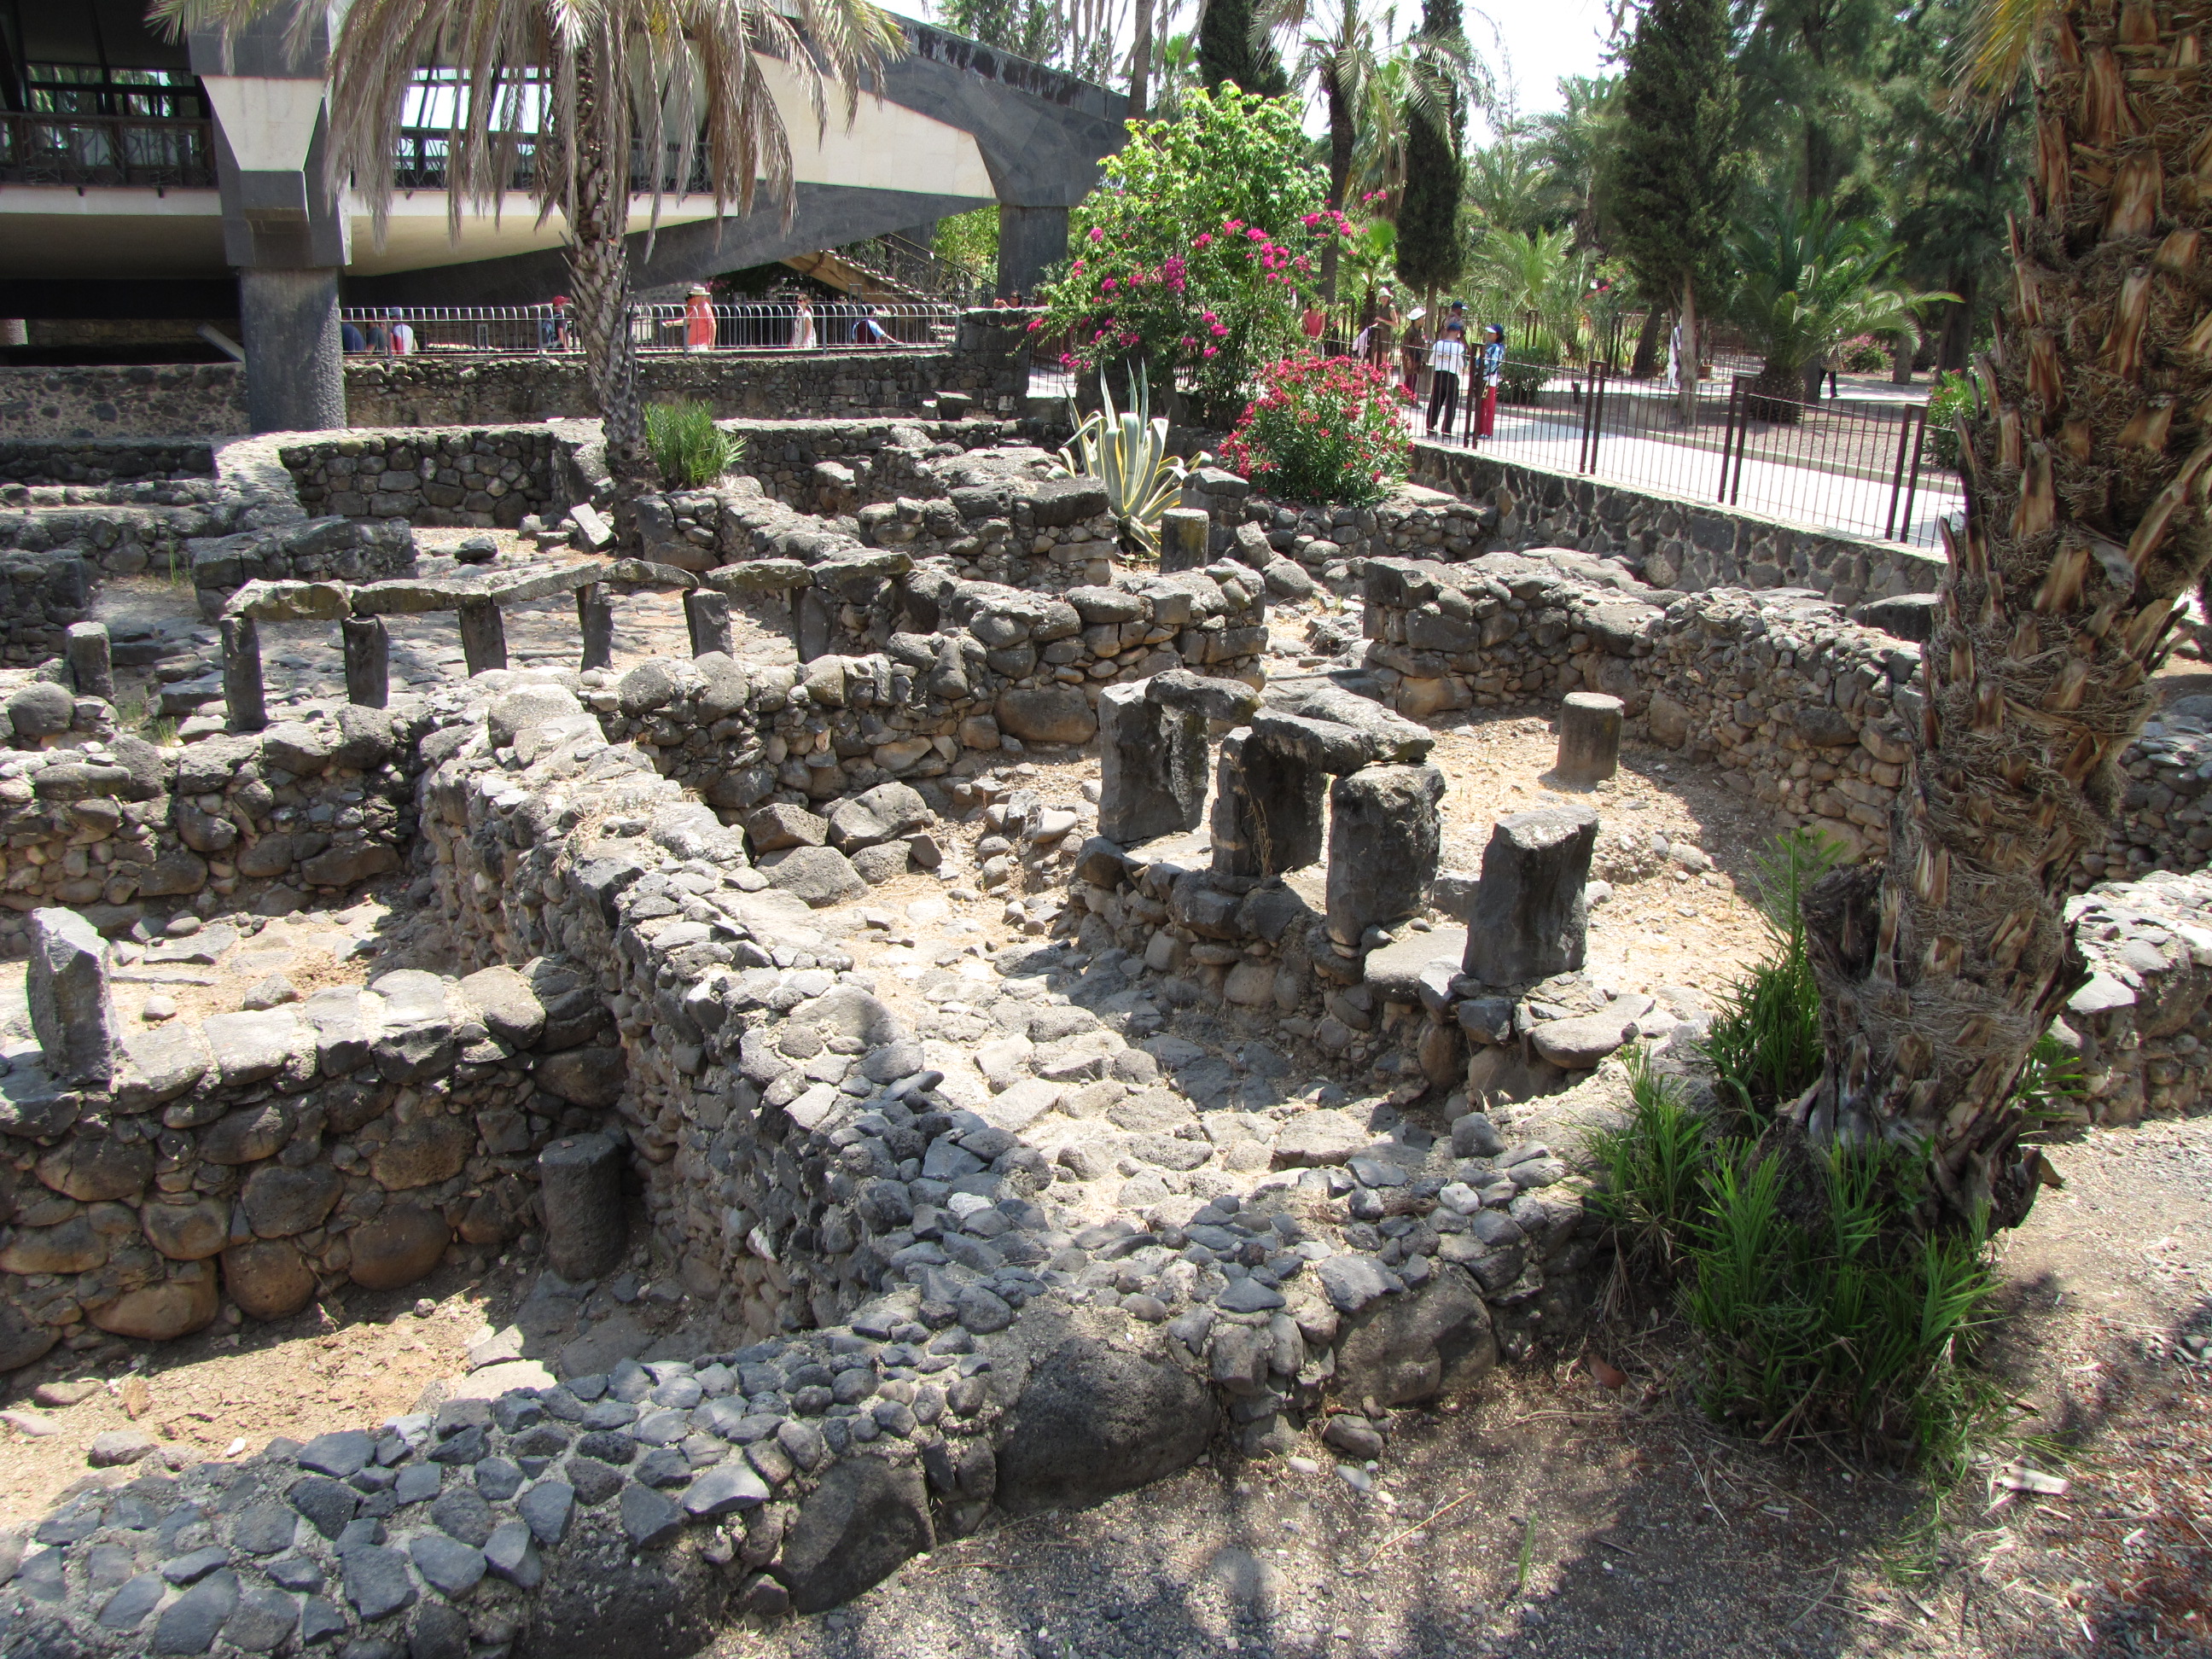 Residential Area of Capernaum